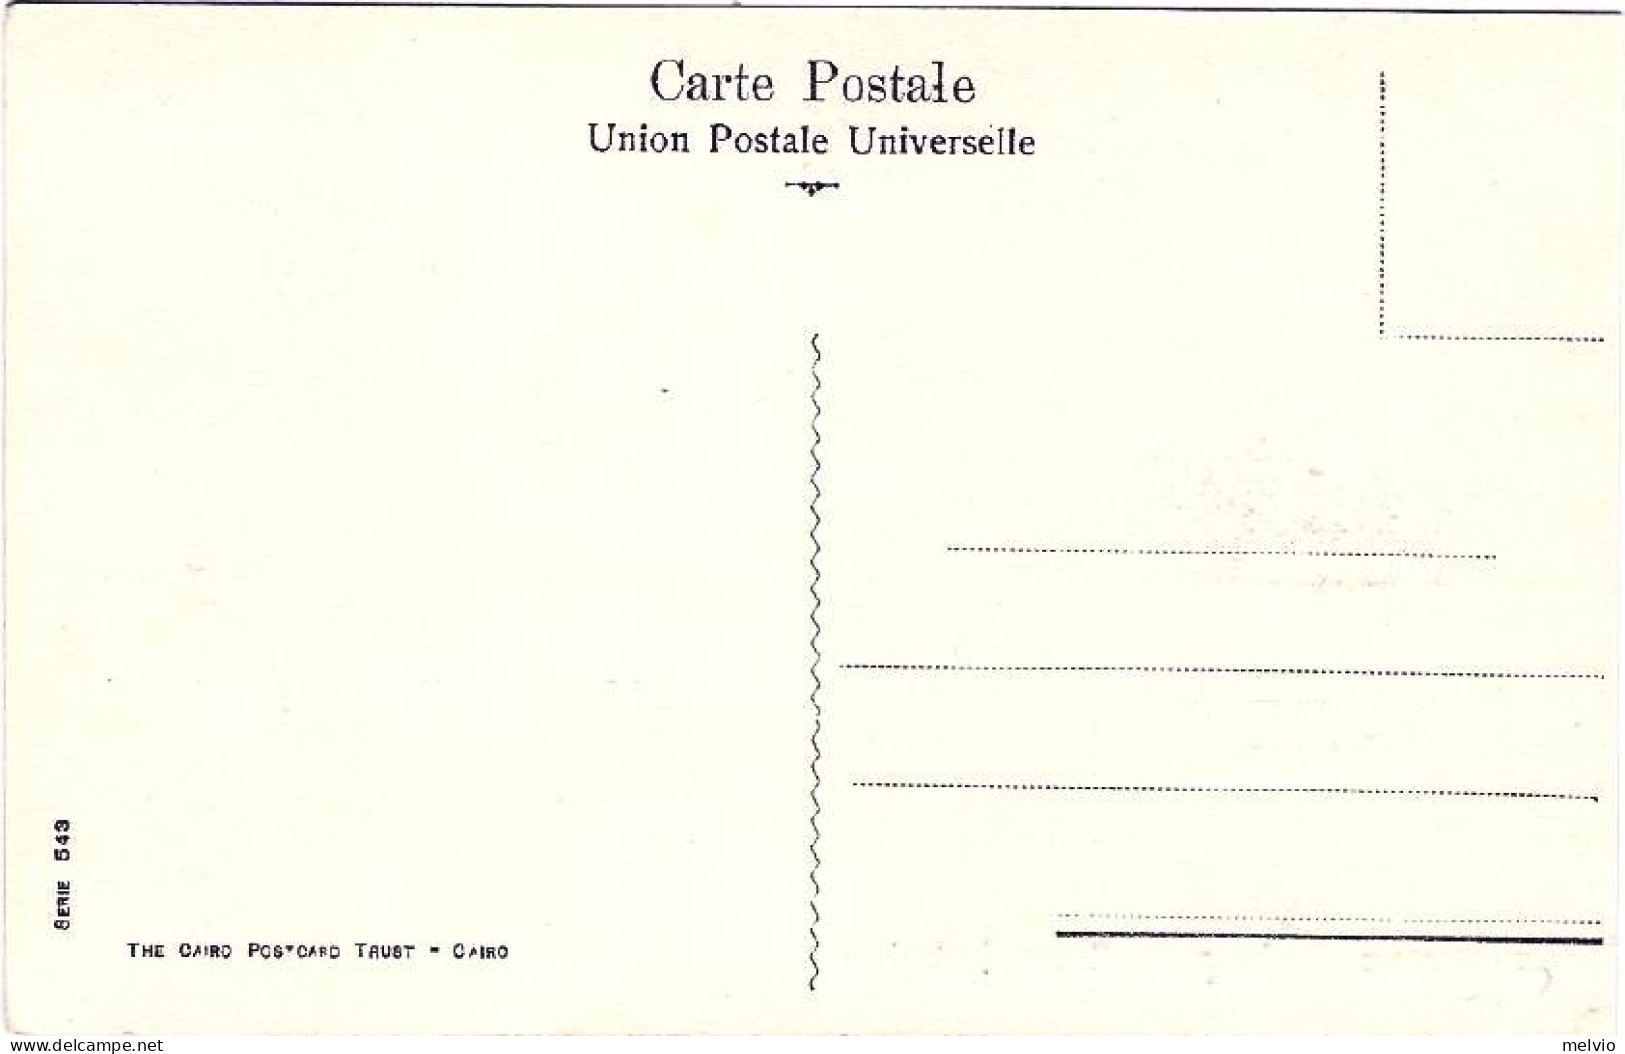 1930circa-Egitto Cartolina "Chameaux Garin Pour Noces Indigene" - Sonstige & Ohne Zuordnung